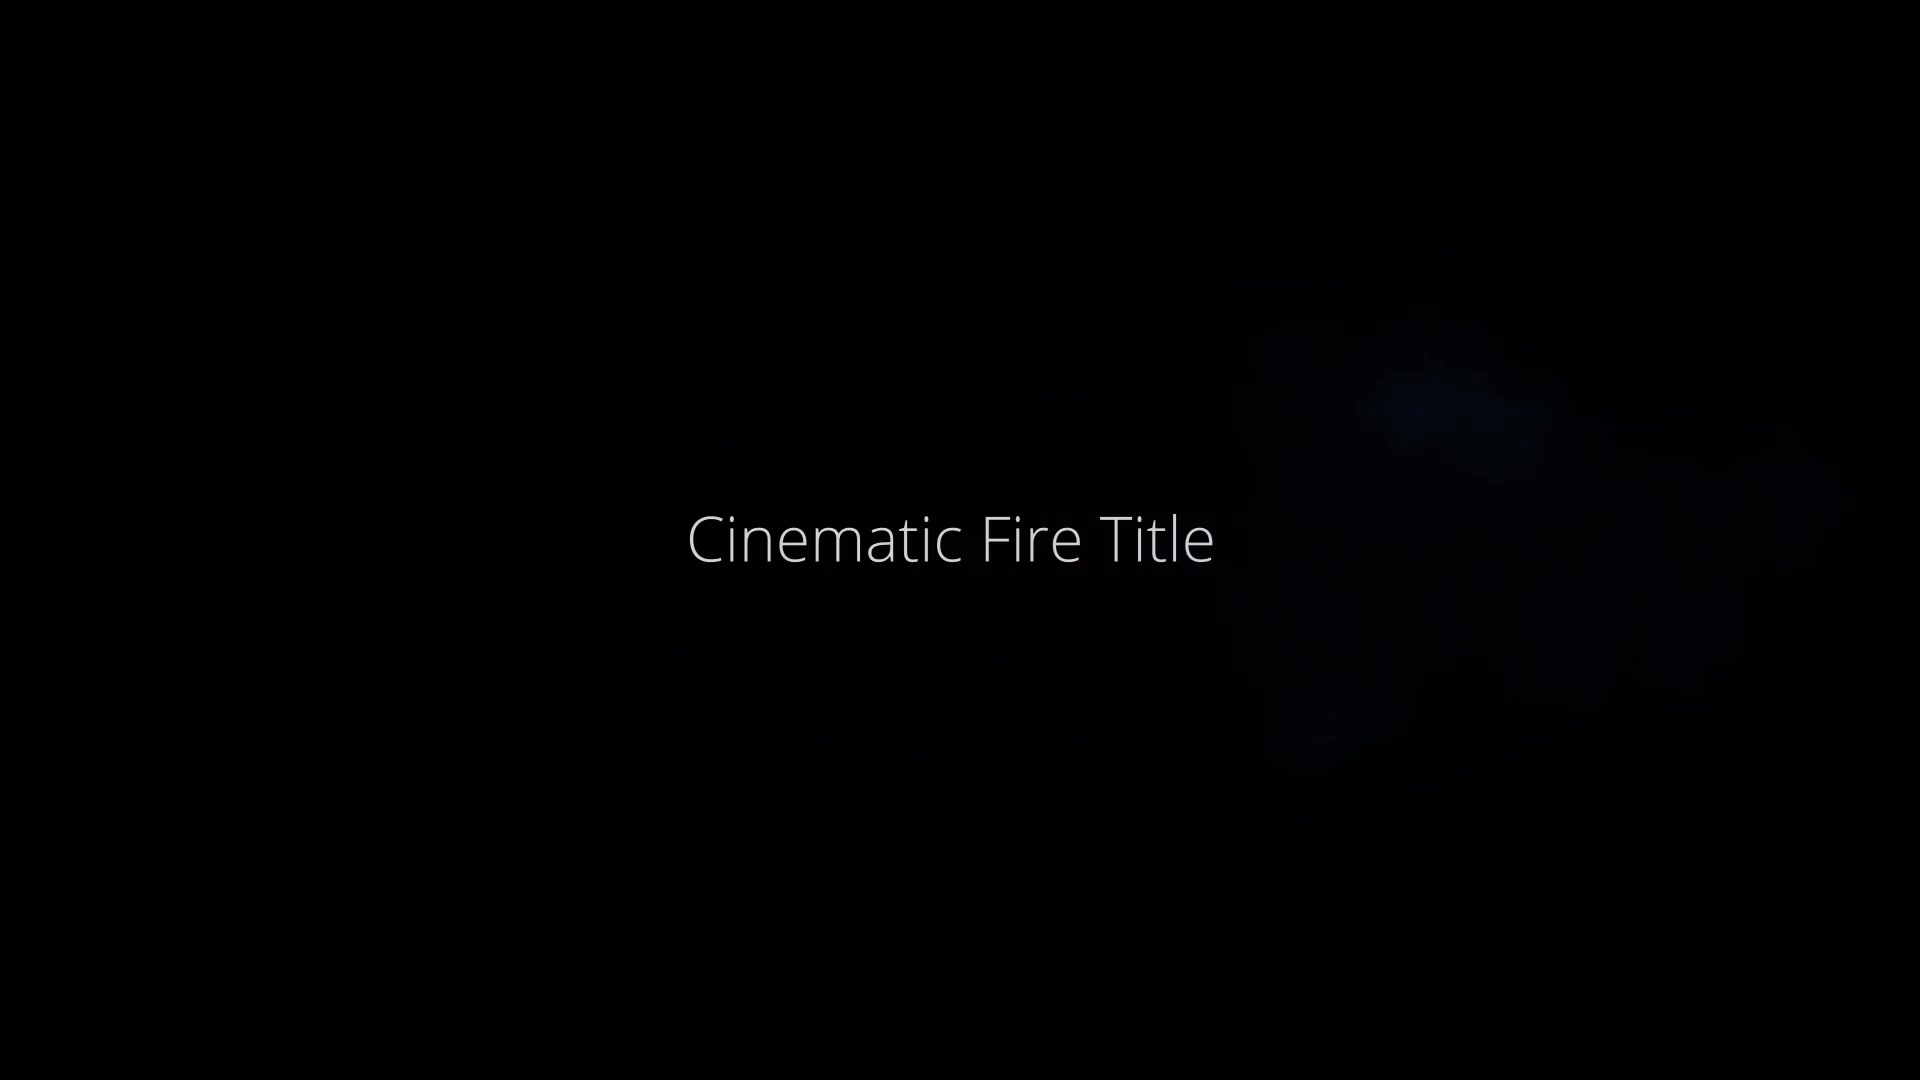 Cinematic Fire Title Videohive 25973506 Premiere Pro Image 2